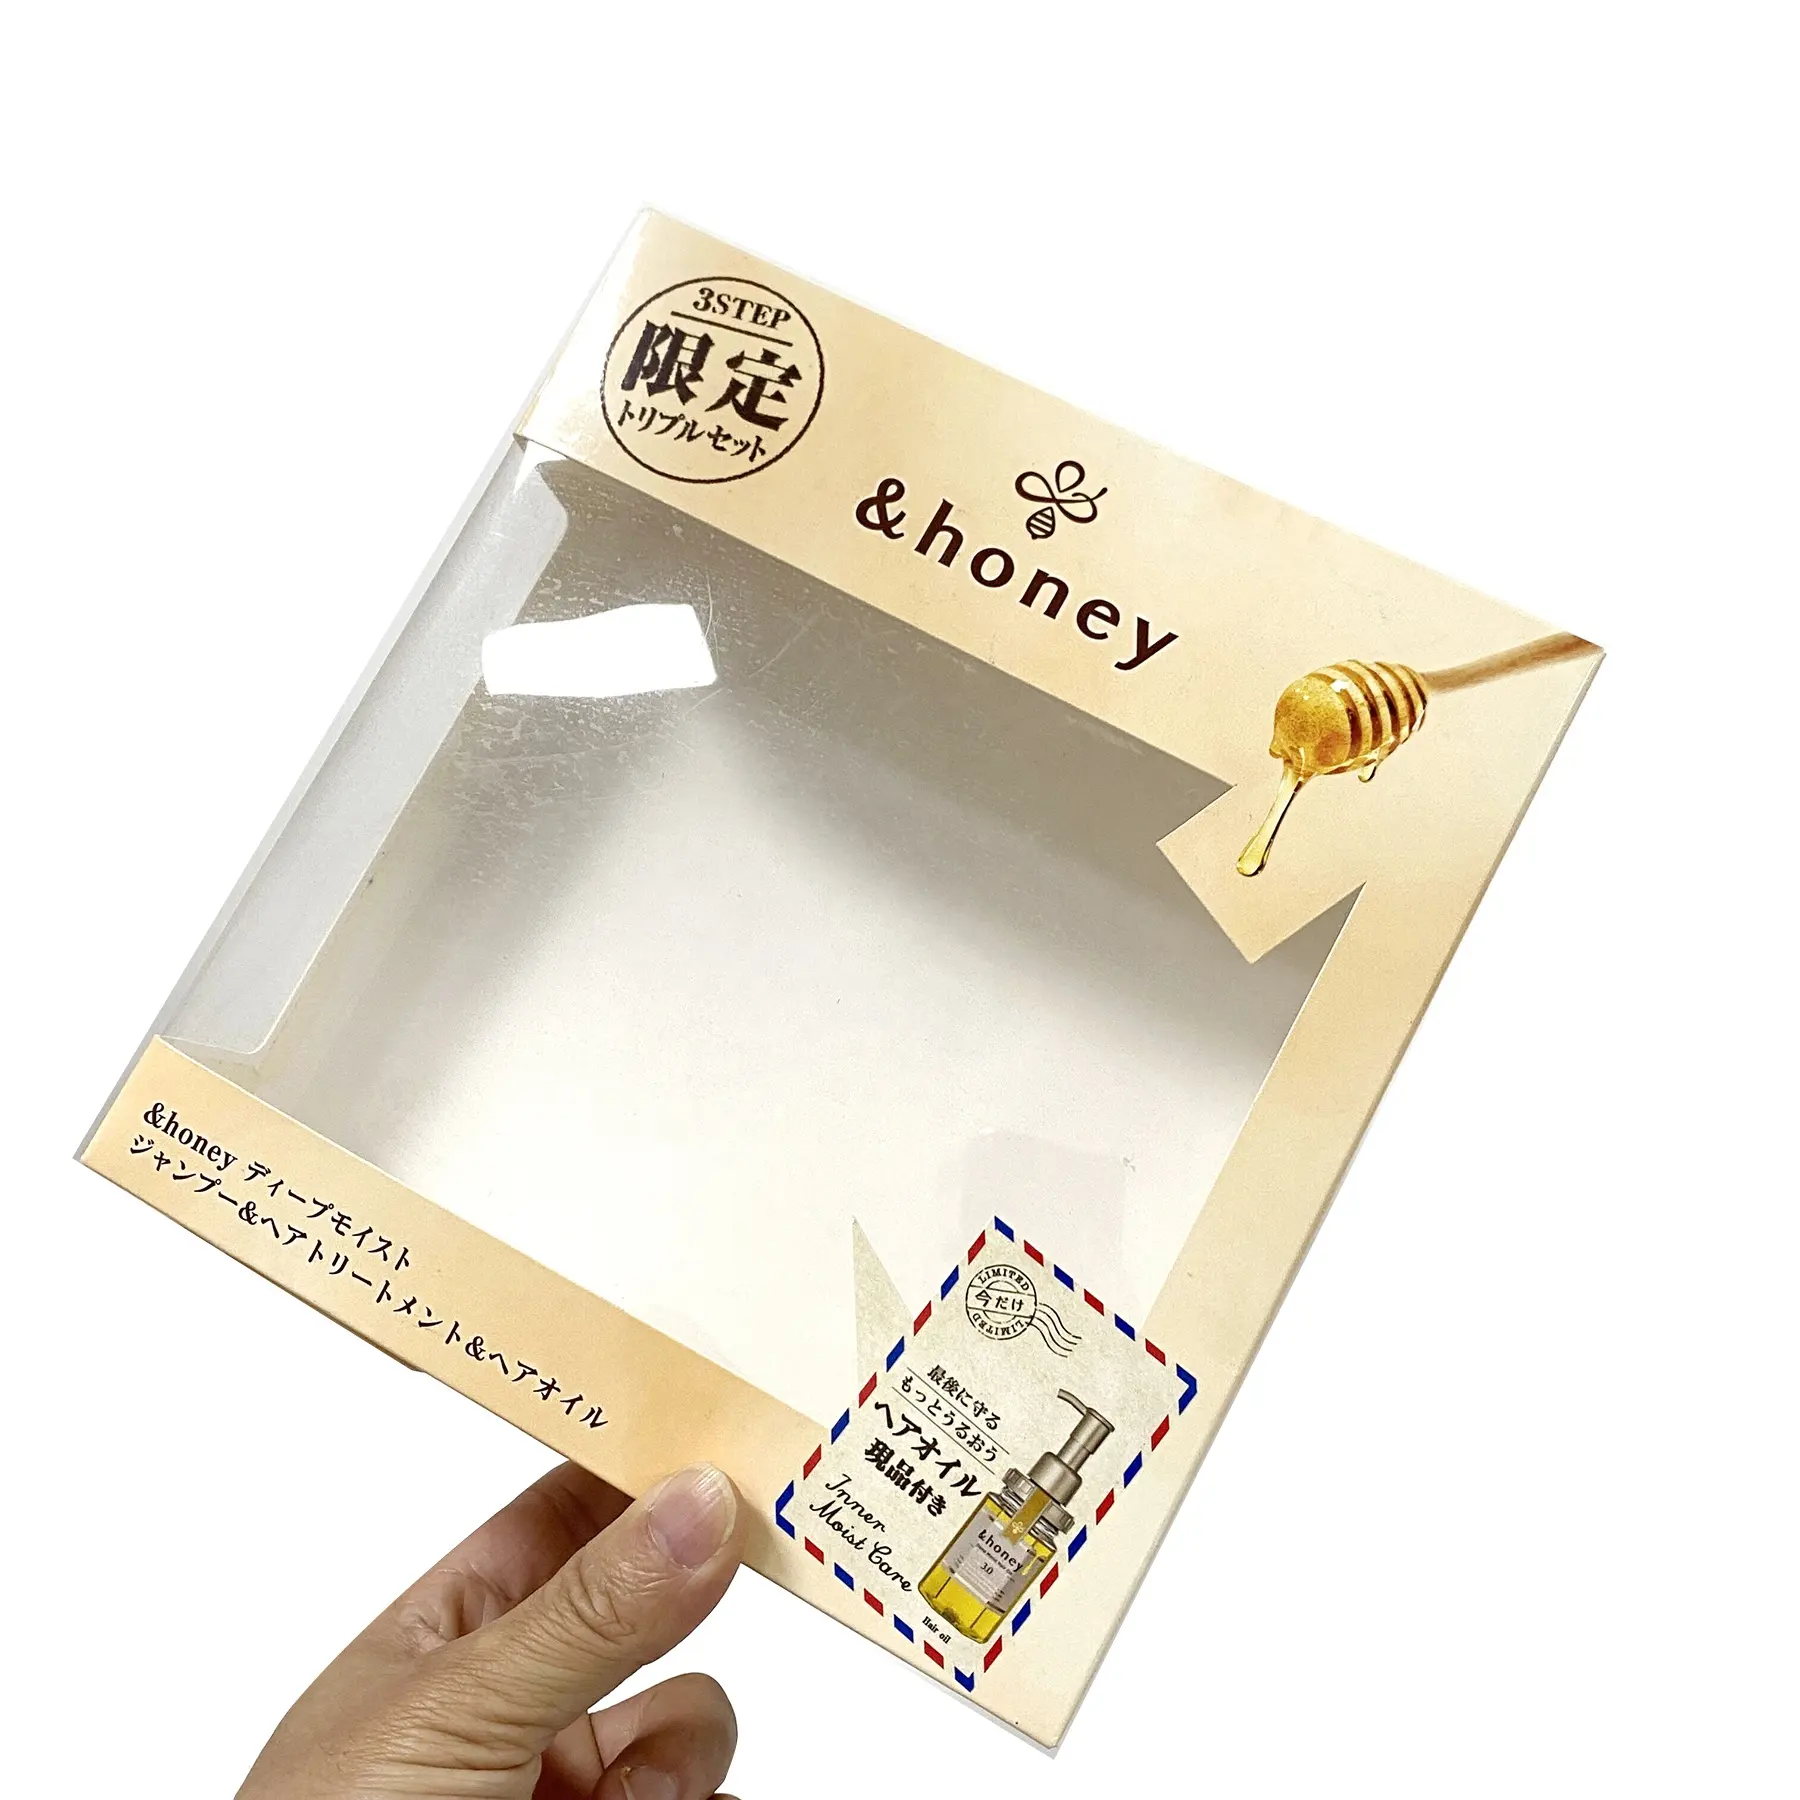 Kotak kue jendela transparan bening kertas berlapis seni warna-warni kustom pengisi daya jendela dan kotak kemasan dengan pegangan cetak